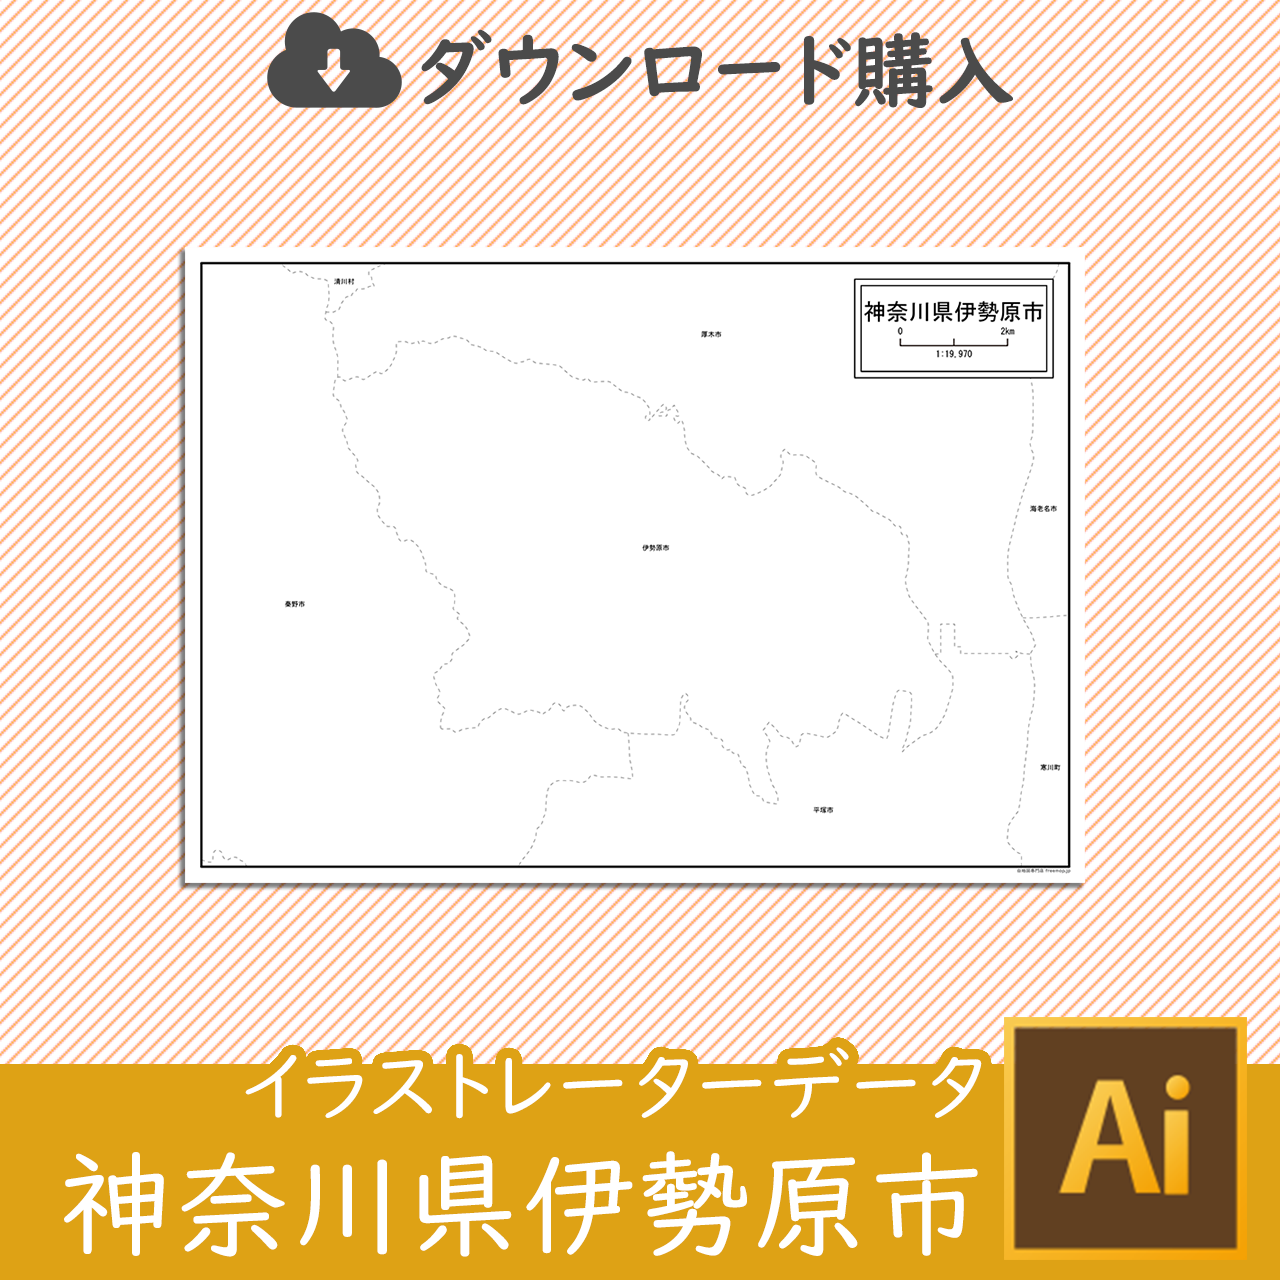 伊勢原市のaiデータのサムネイル画像